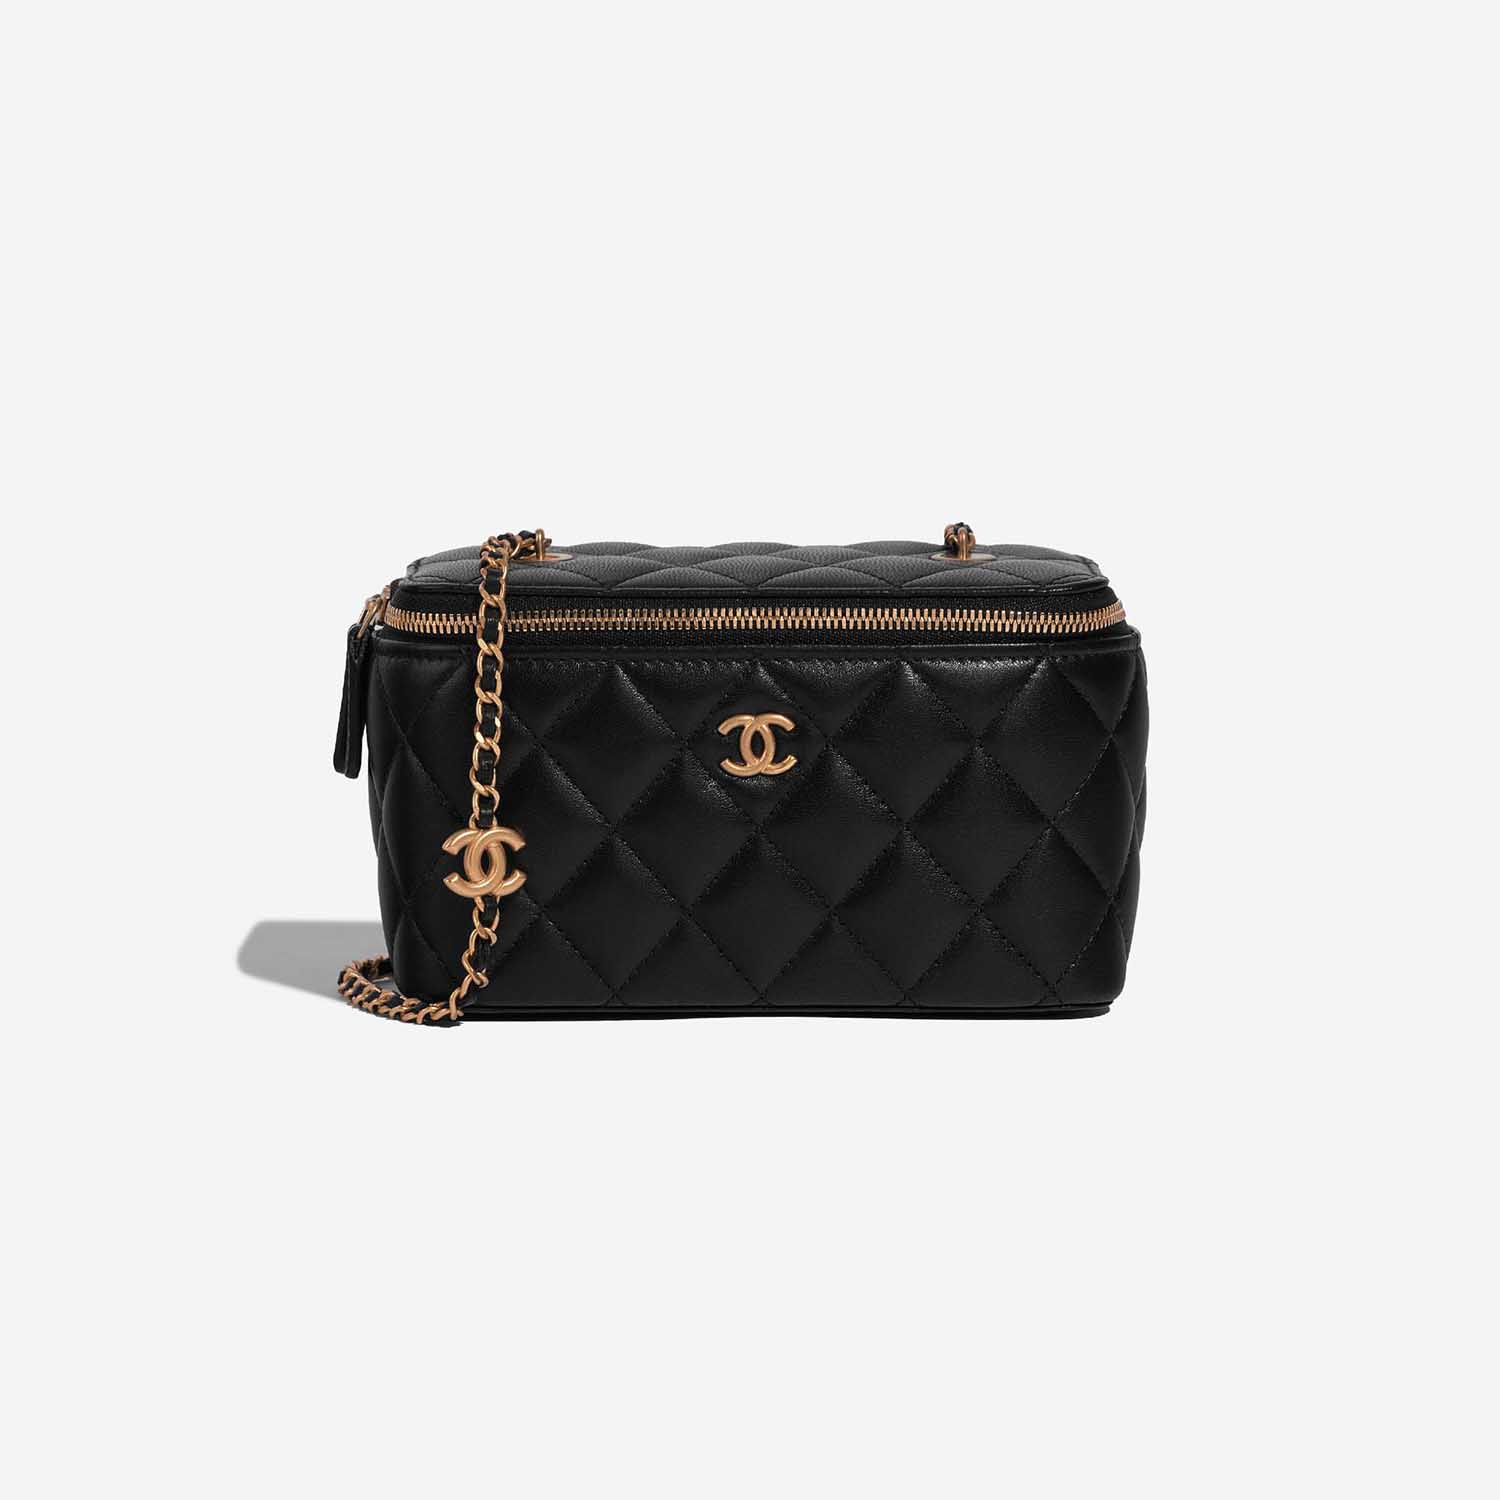 Chanel Vanity Small Black Front | Verkaufen Sie Ihre Designer-Tasche auf Saclab.com